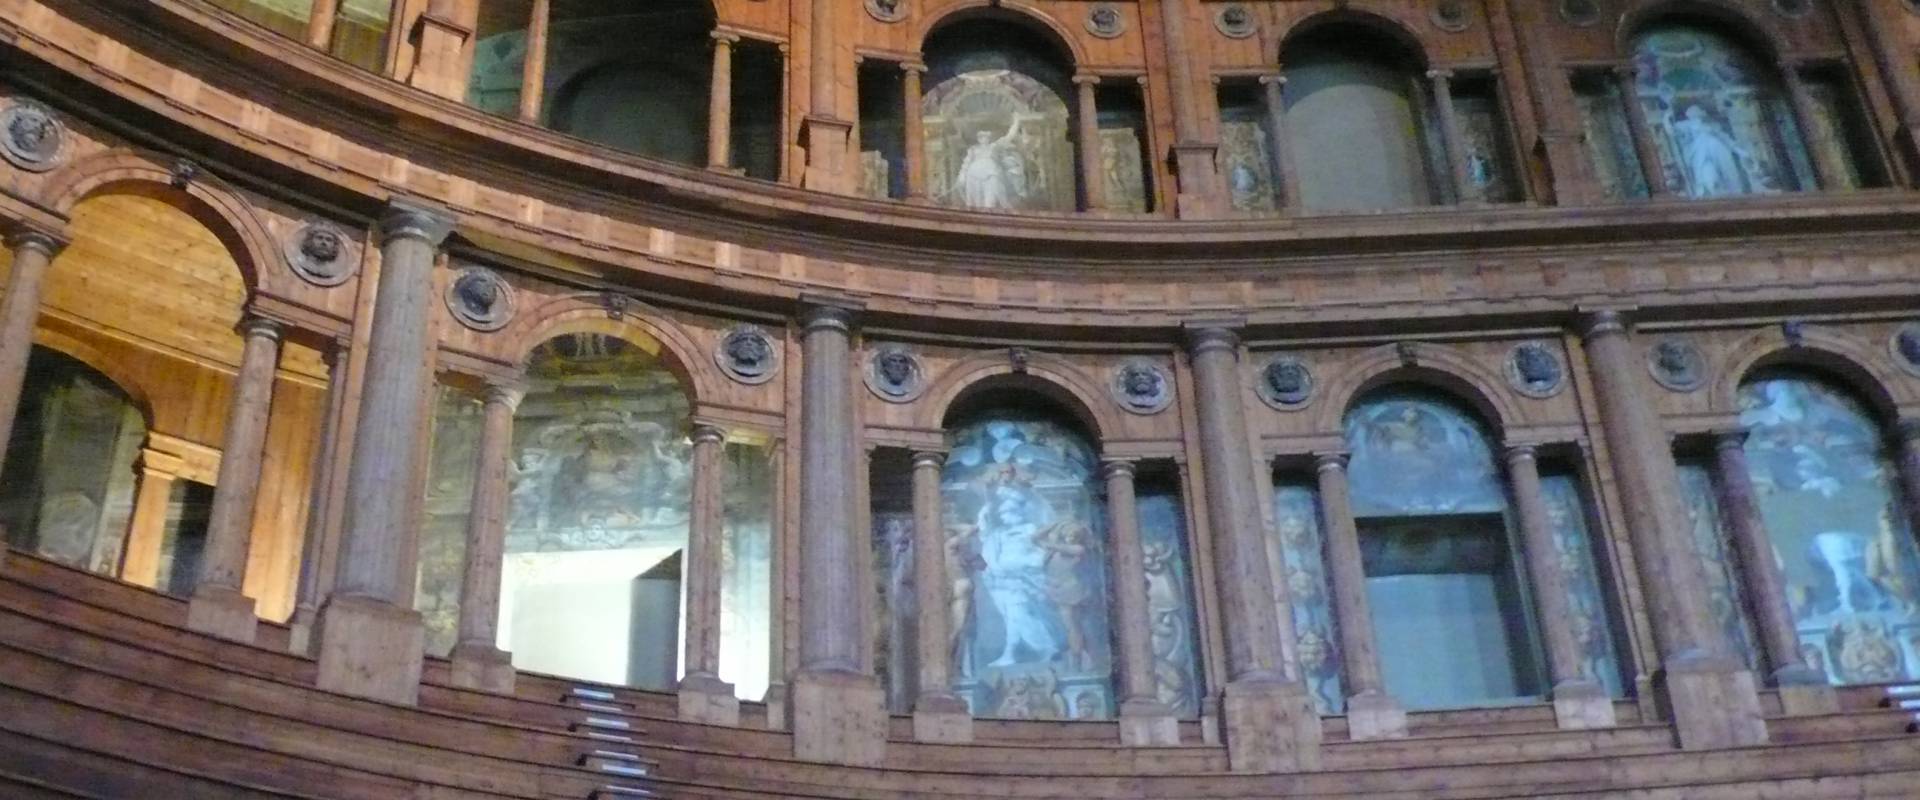 Teatro Farnese 2 - Parma foto di RatMan1234